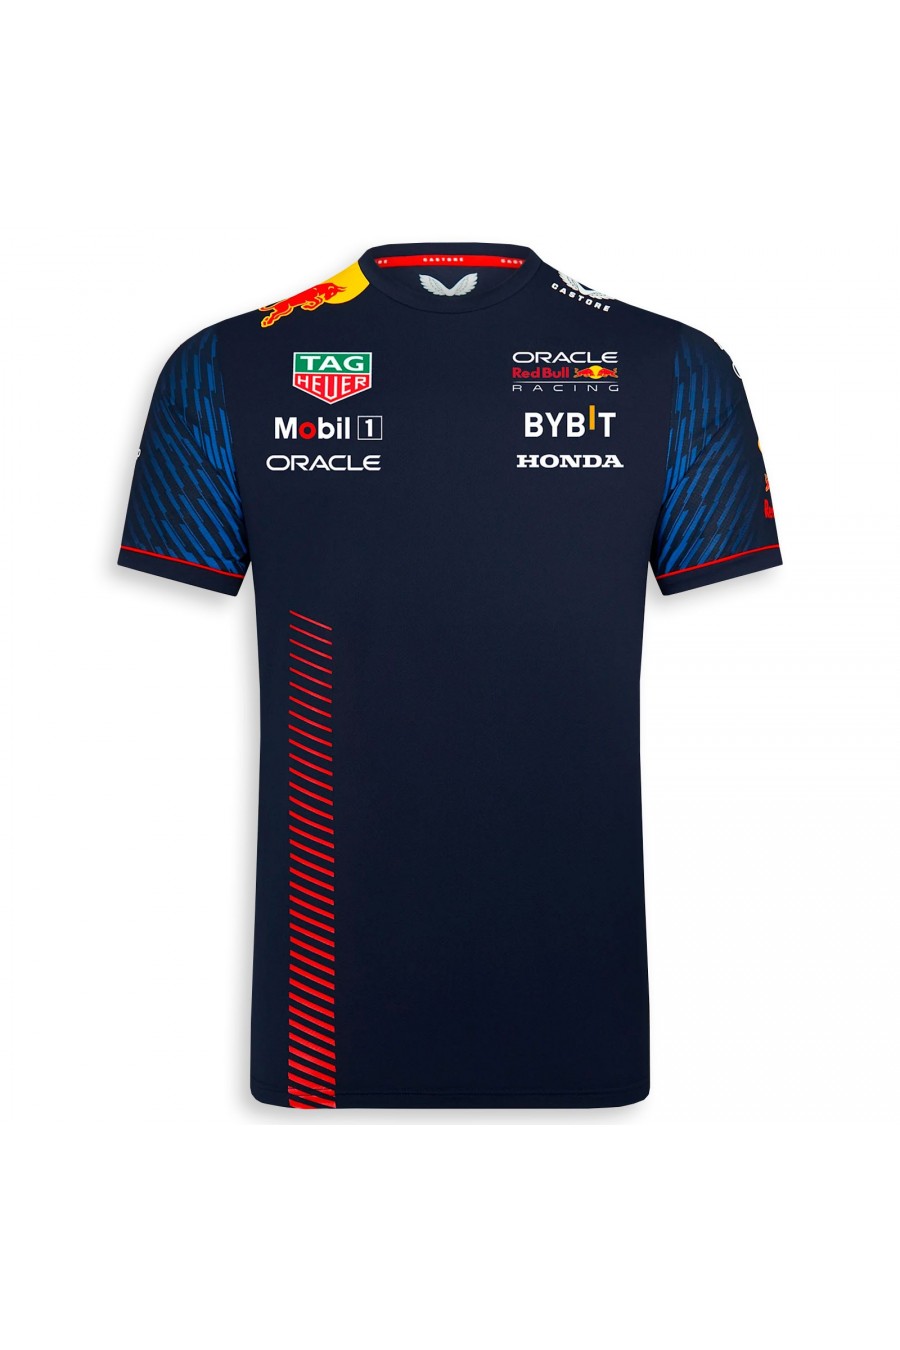 Camiseta Red Bull F1